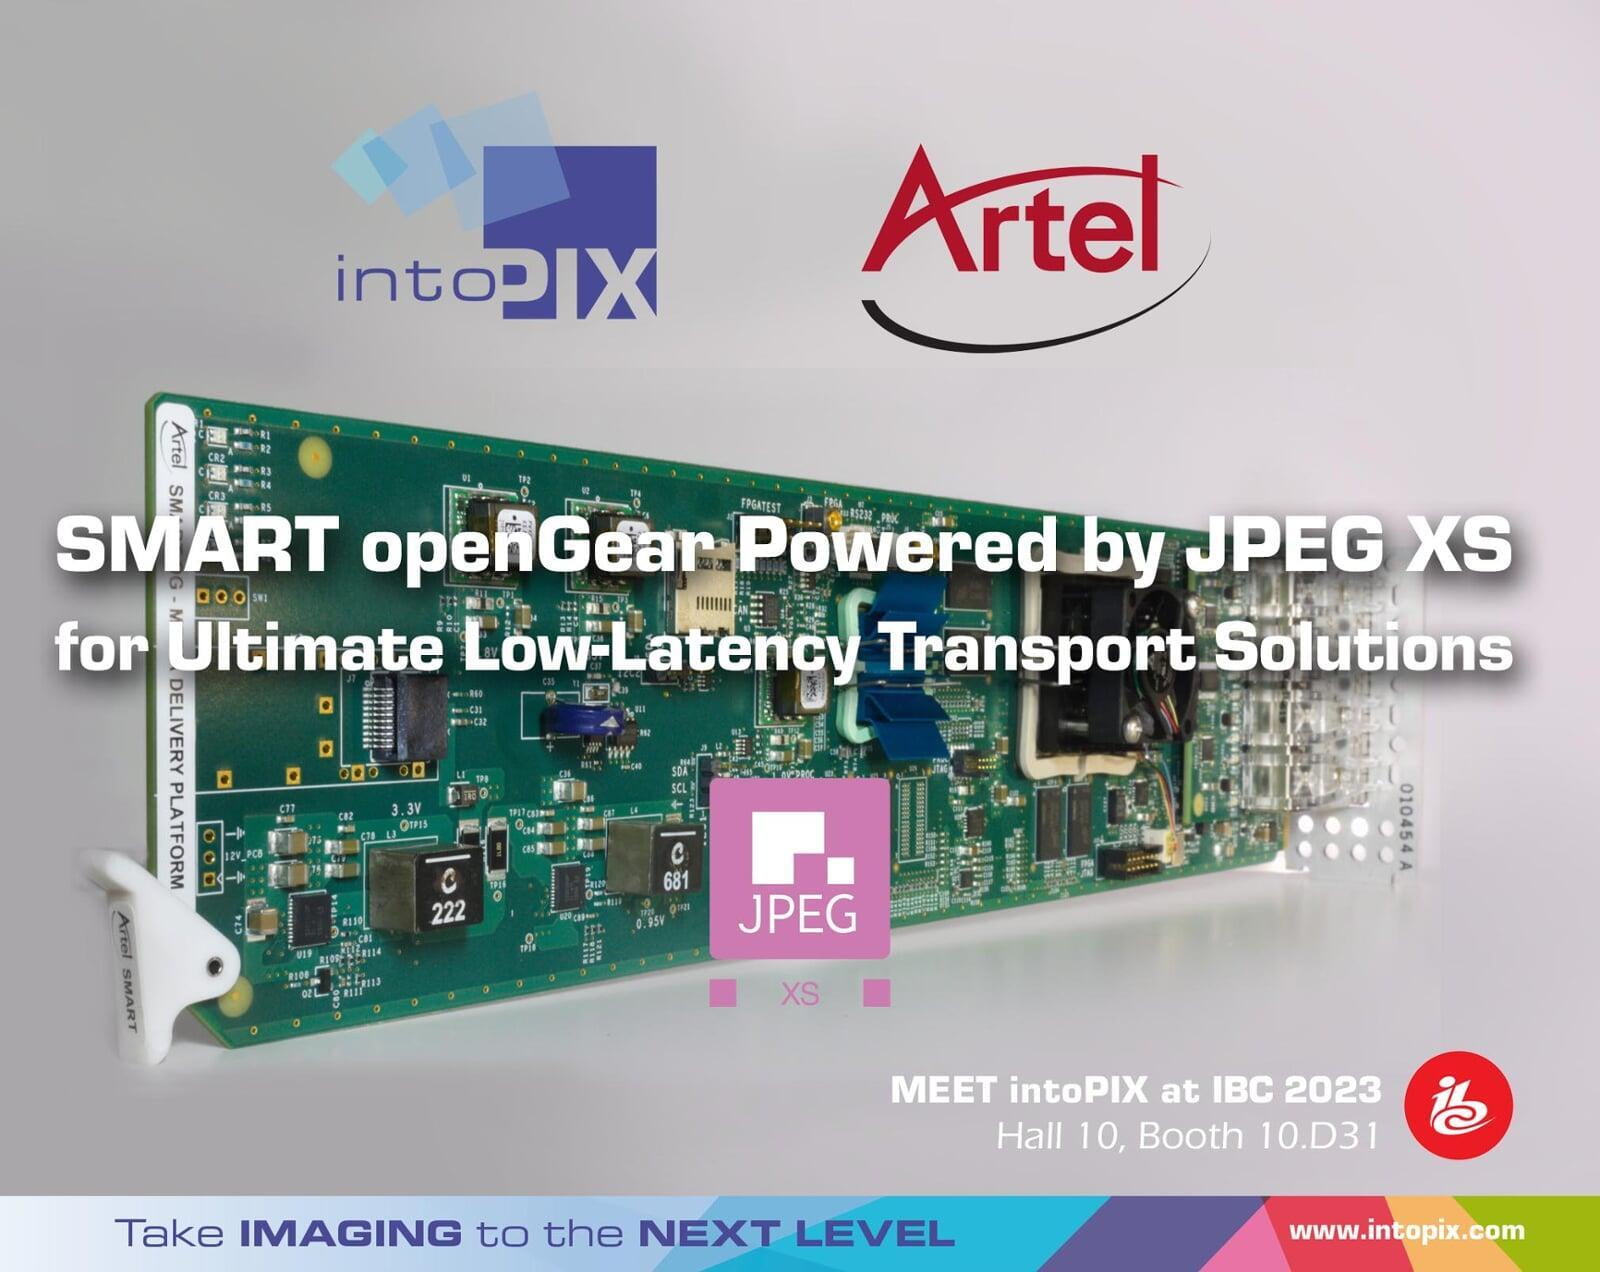 增強型Artel SMART openGear®槓桿 intoPIX JPEG XS技術提供終極低延遲傳輸解決方案